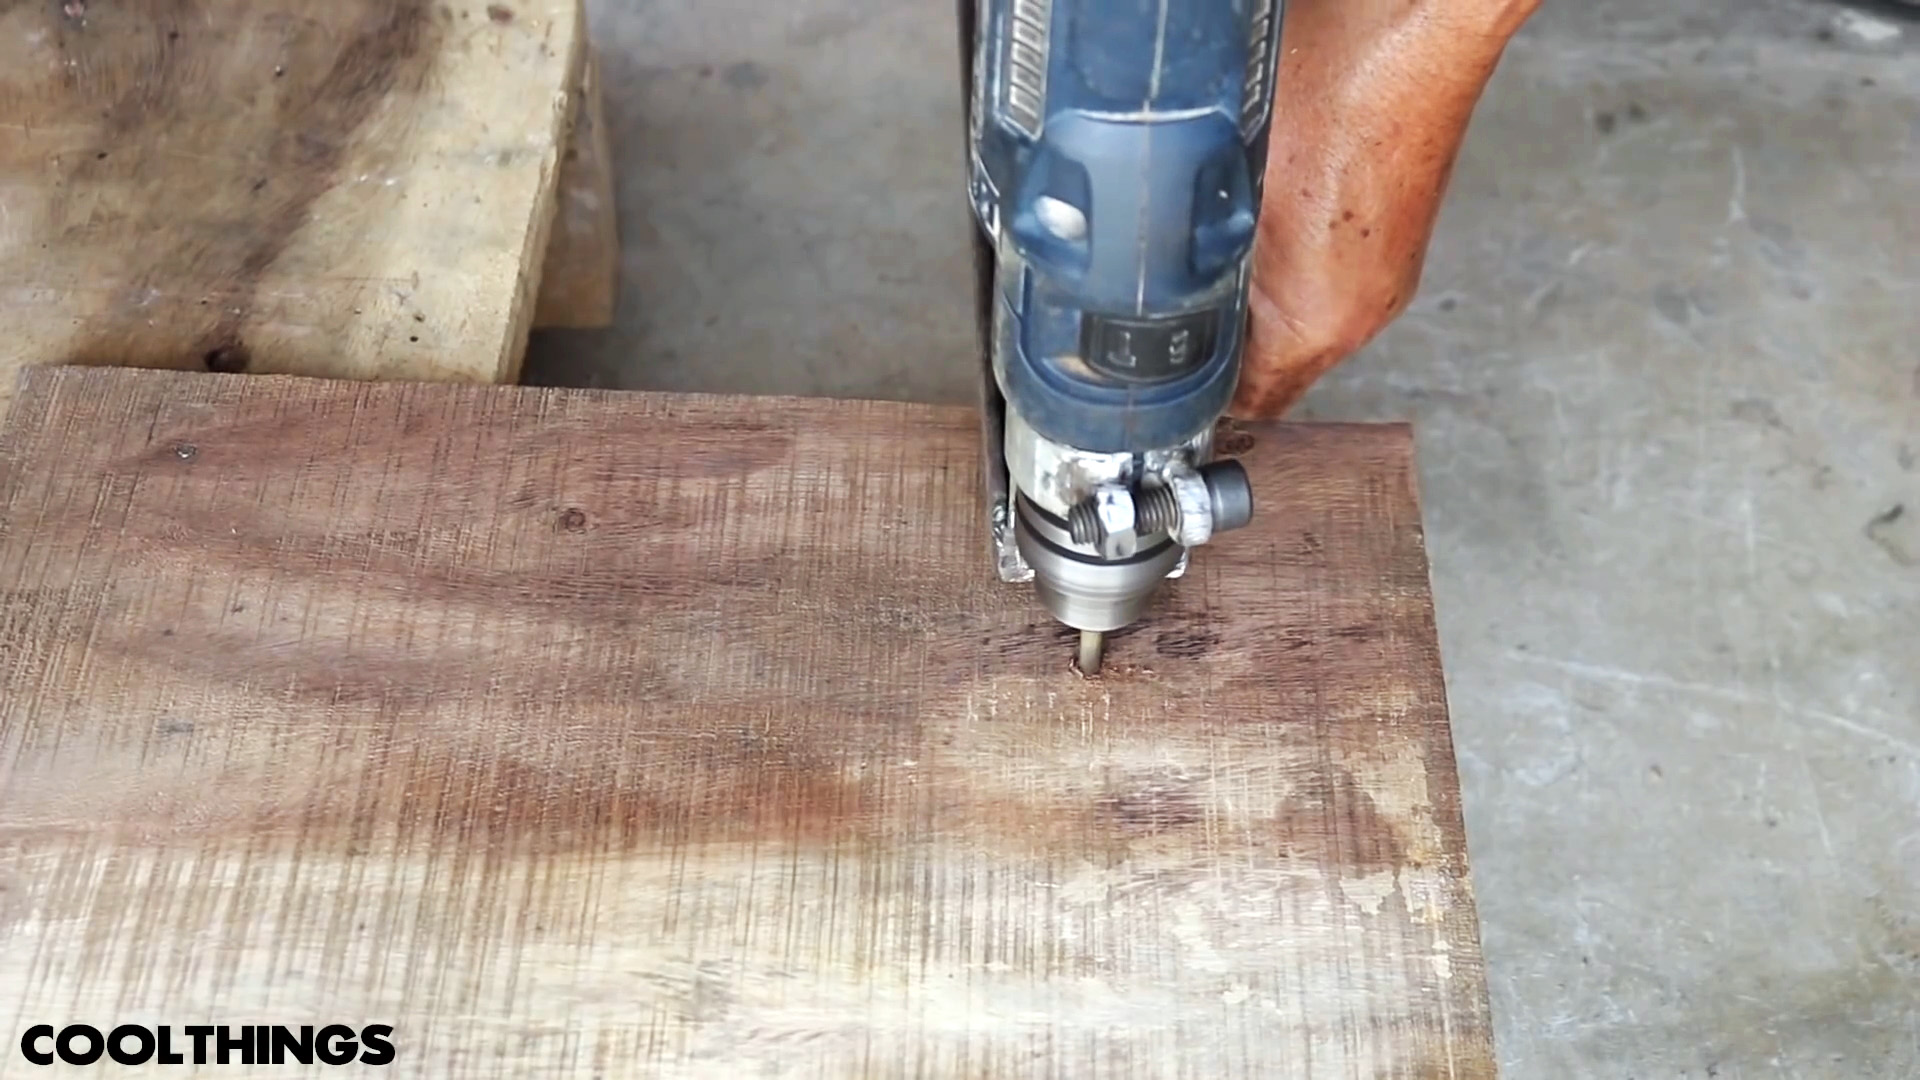 Как сделать съемное приспособление для дрели, которое превратит ее во фрезер для вырезания любых деревянных кругов